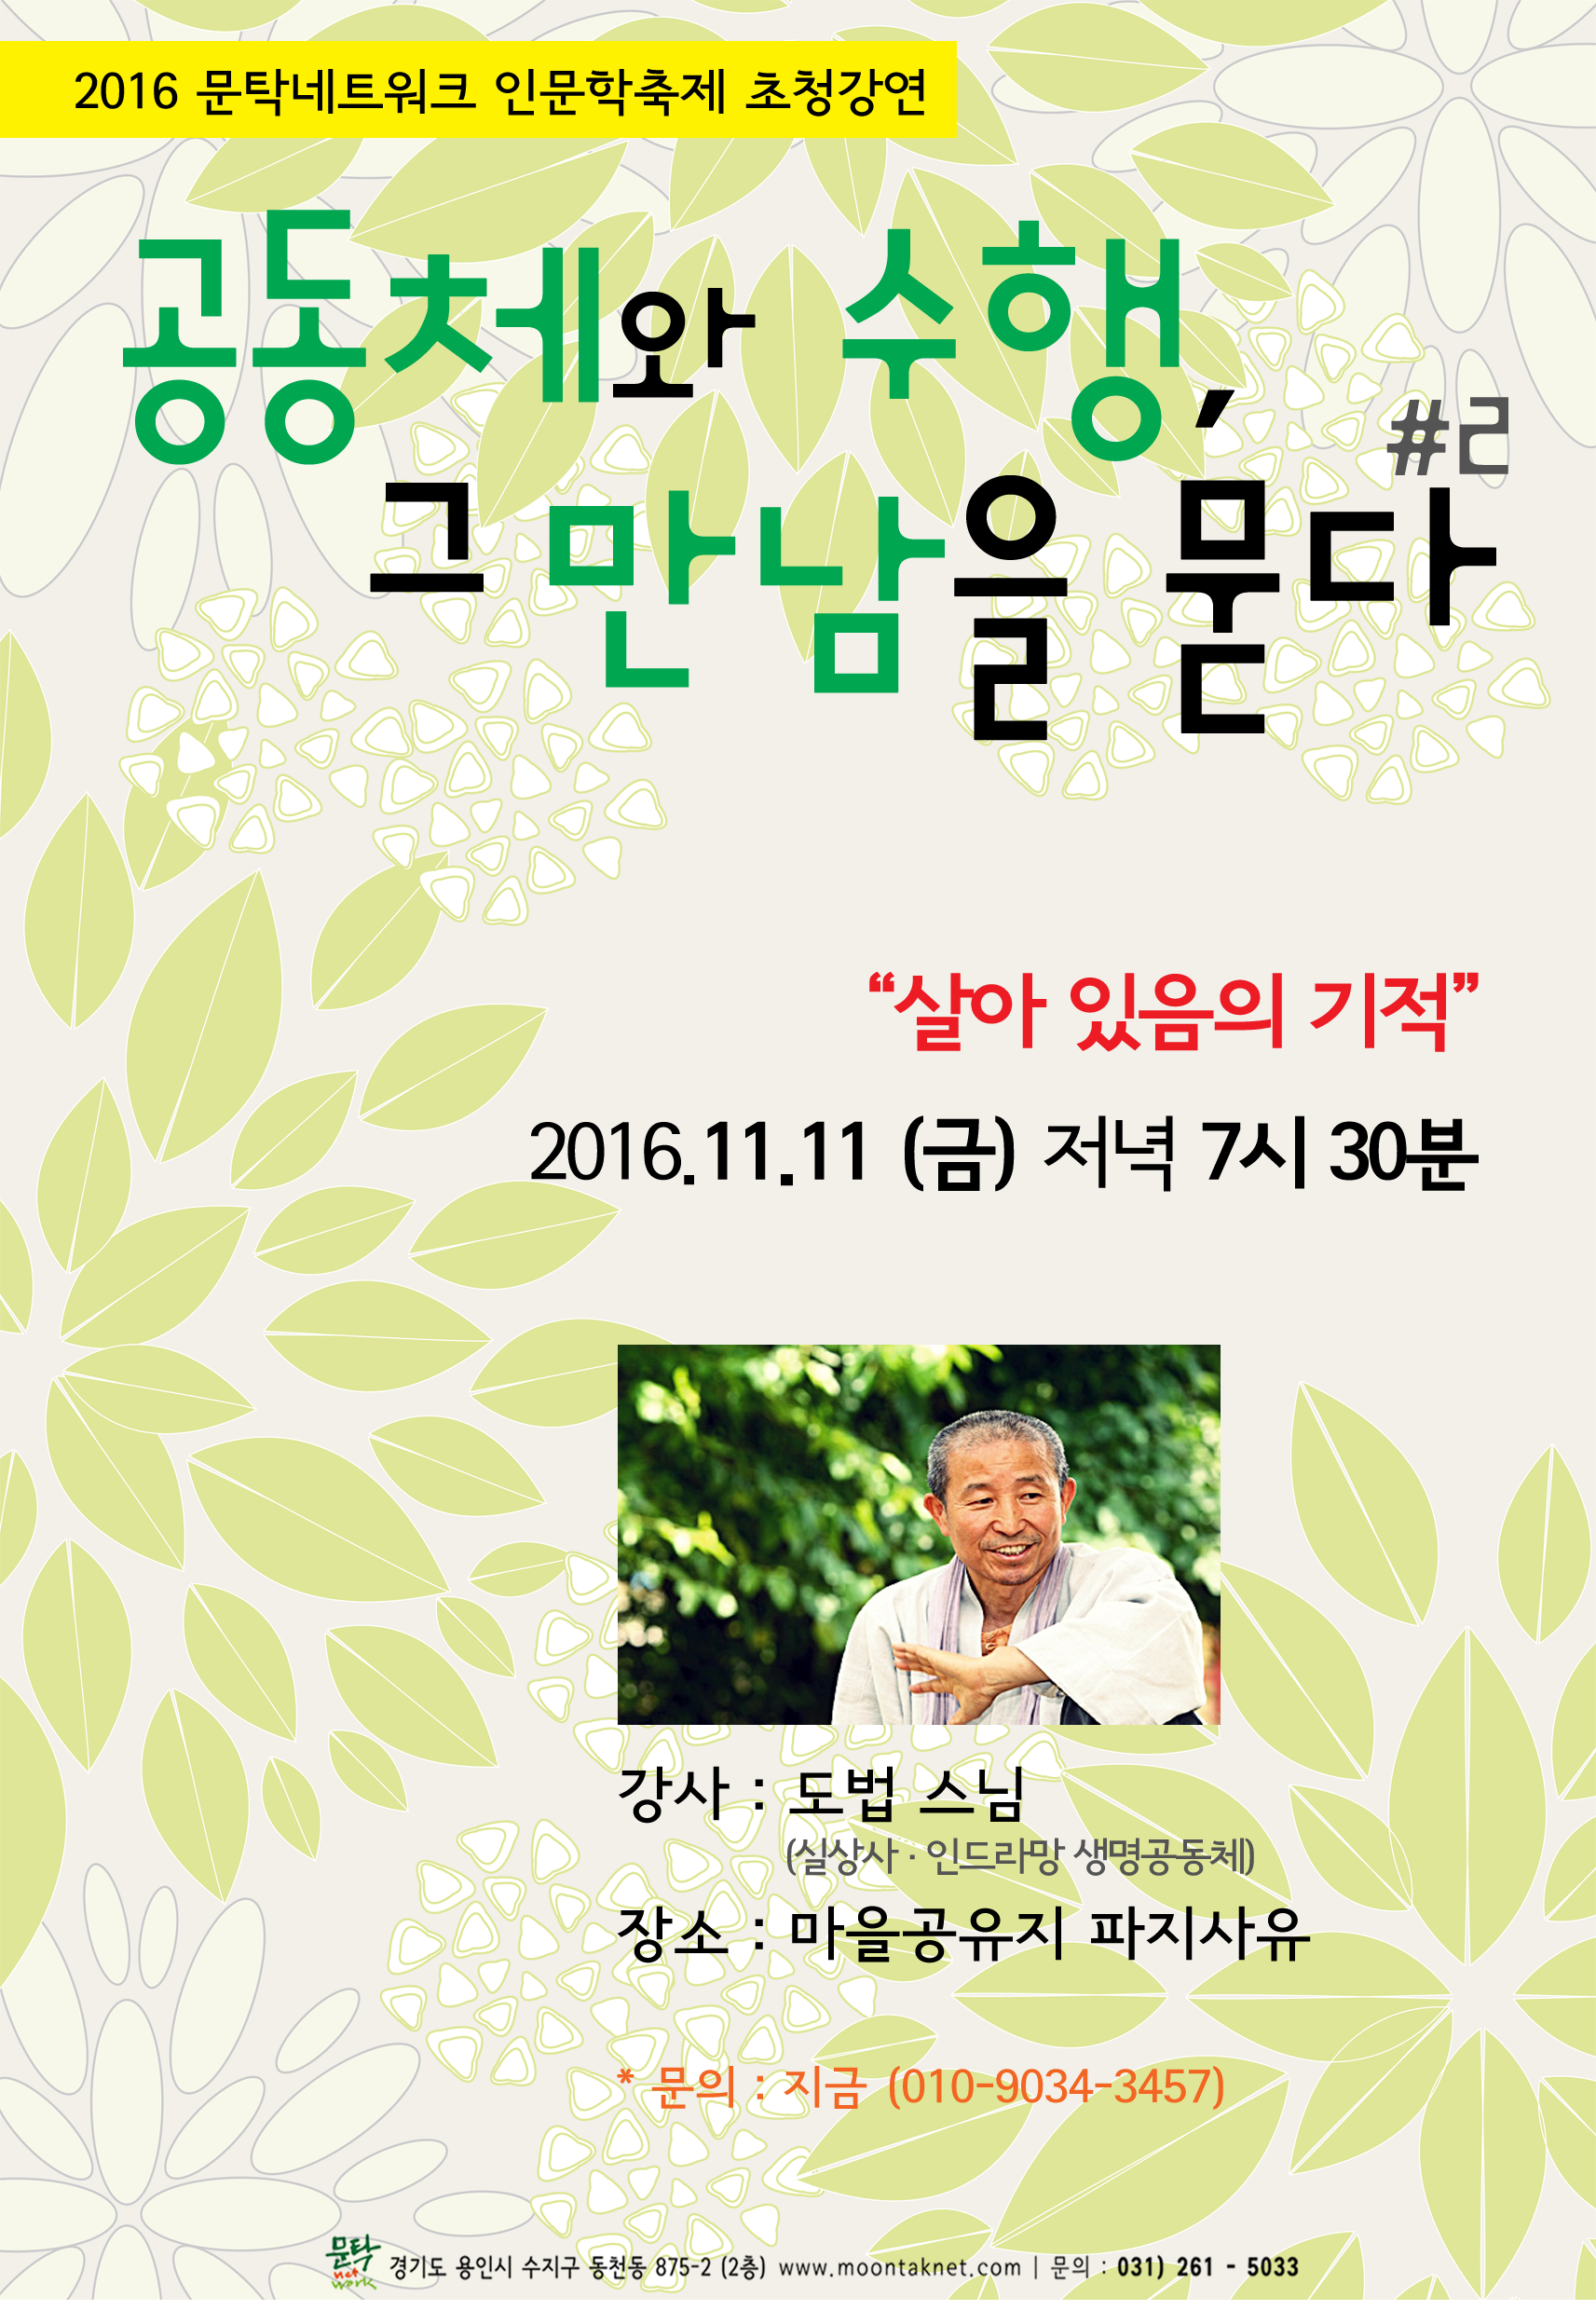 161012 문탁축제 강연 포스터_최종_02.png